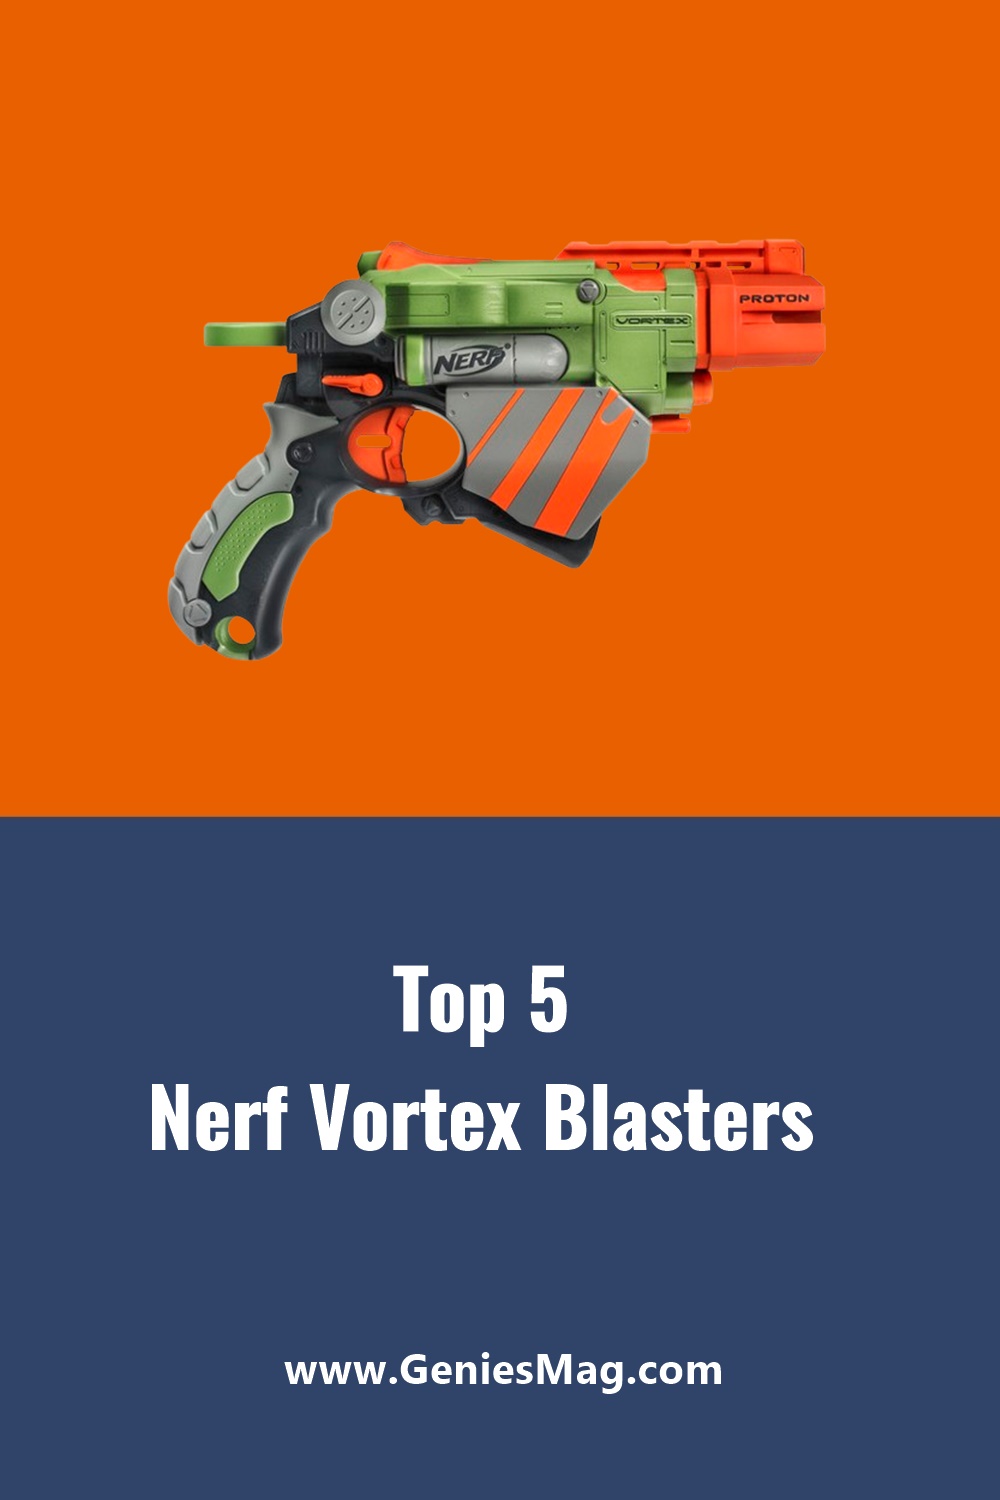 Top 5 Nerf Vortex Blasters